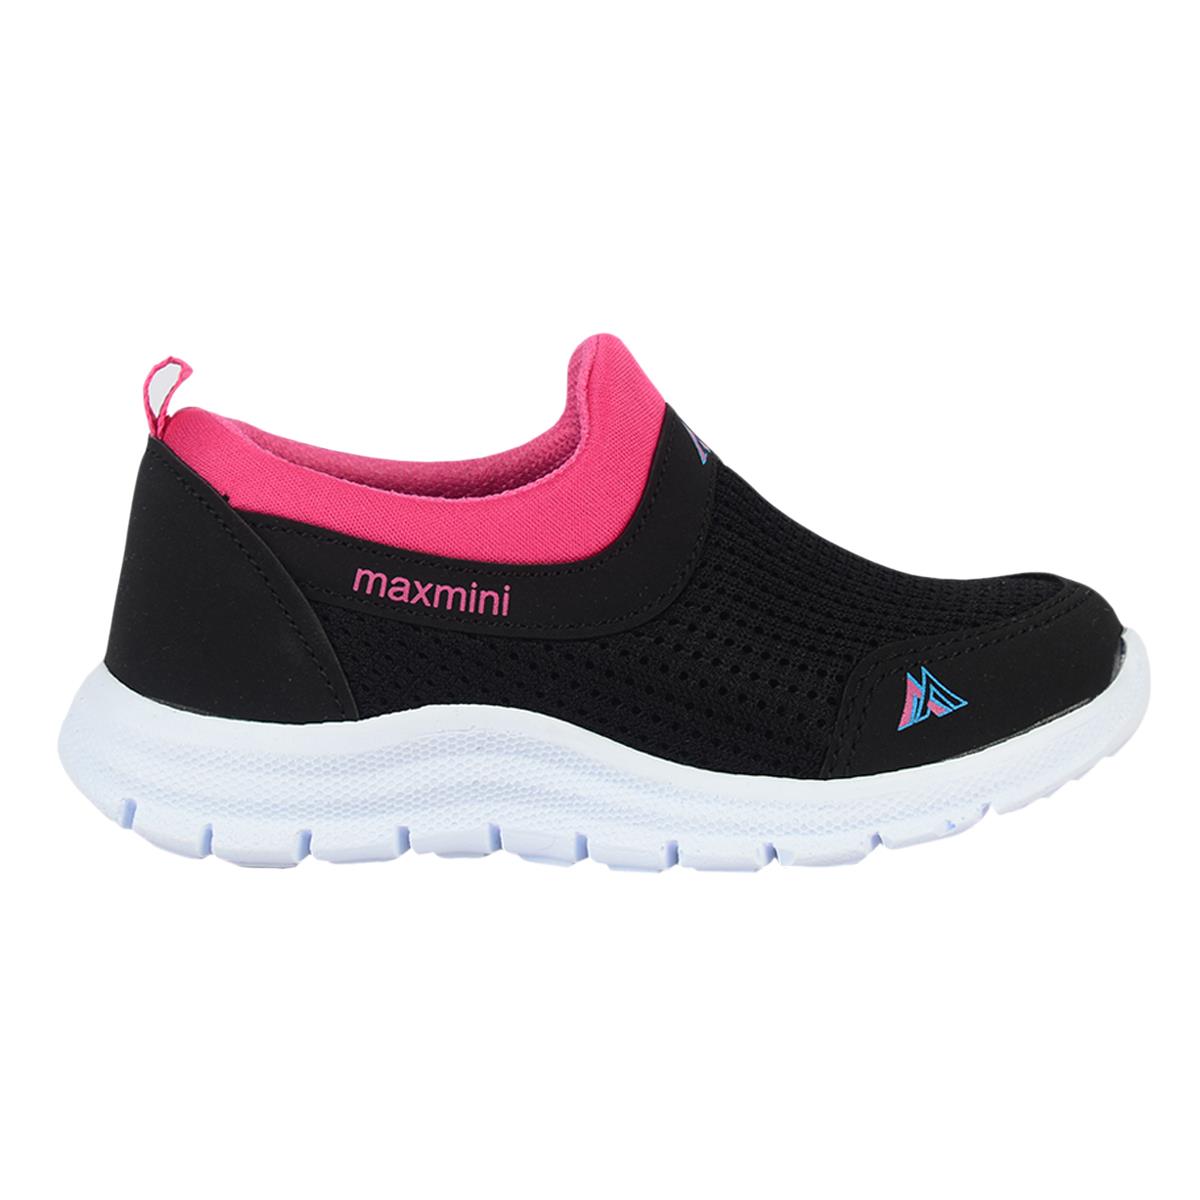 Ayakcenter Maxmini Syh-Fji Bağsız Yazlık Kız Çocuk Spor Ayakkabı